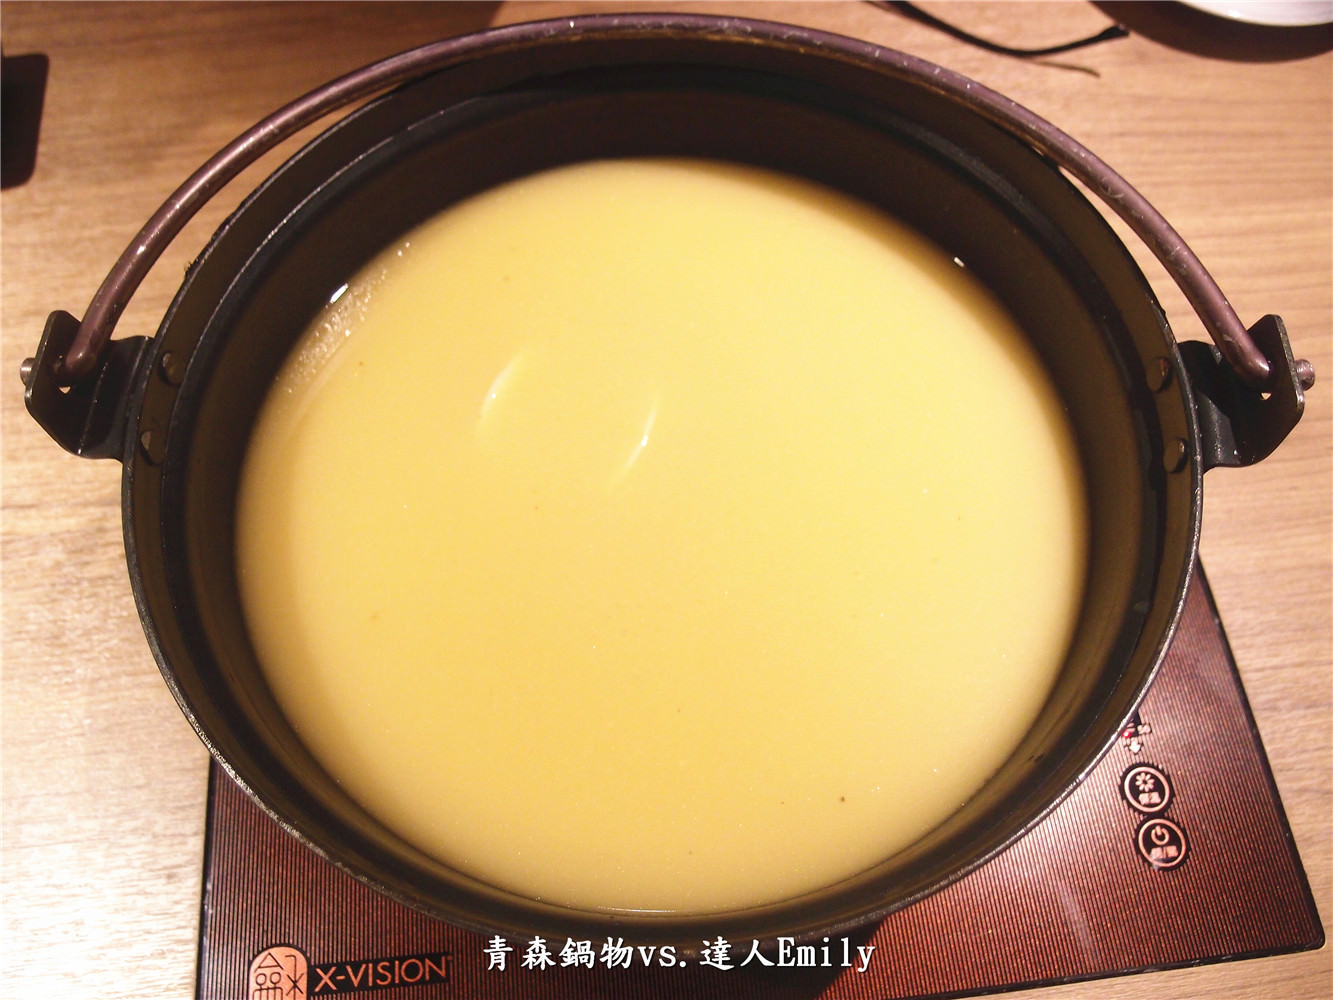 【台中美食】青森鍋物~食材嚴選,裝潢有格調的日式火鍋(還有壽星優惠喔!)